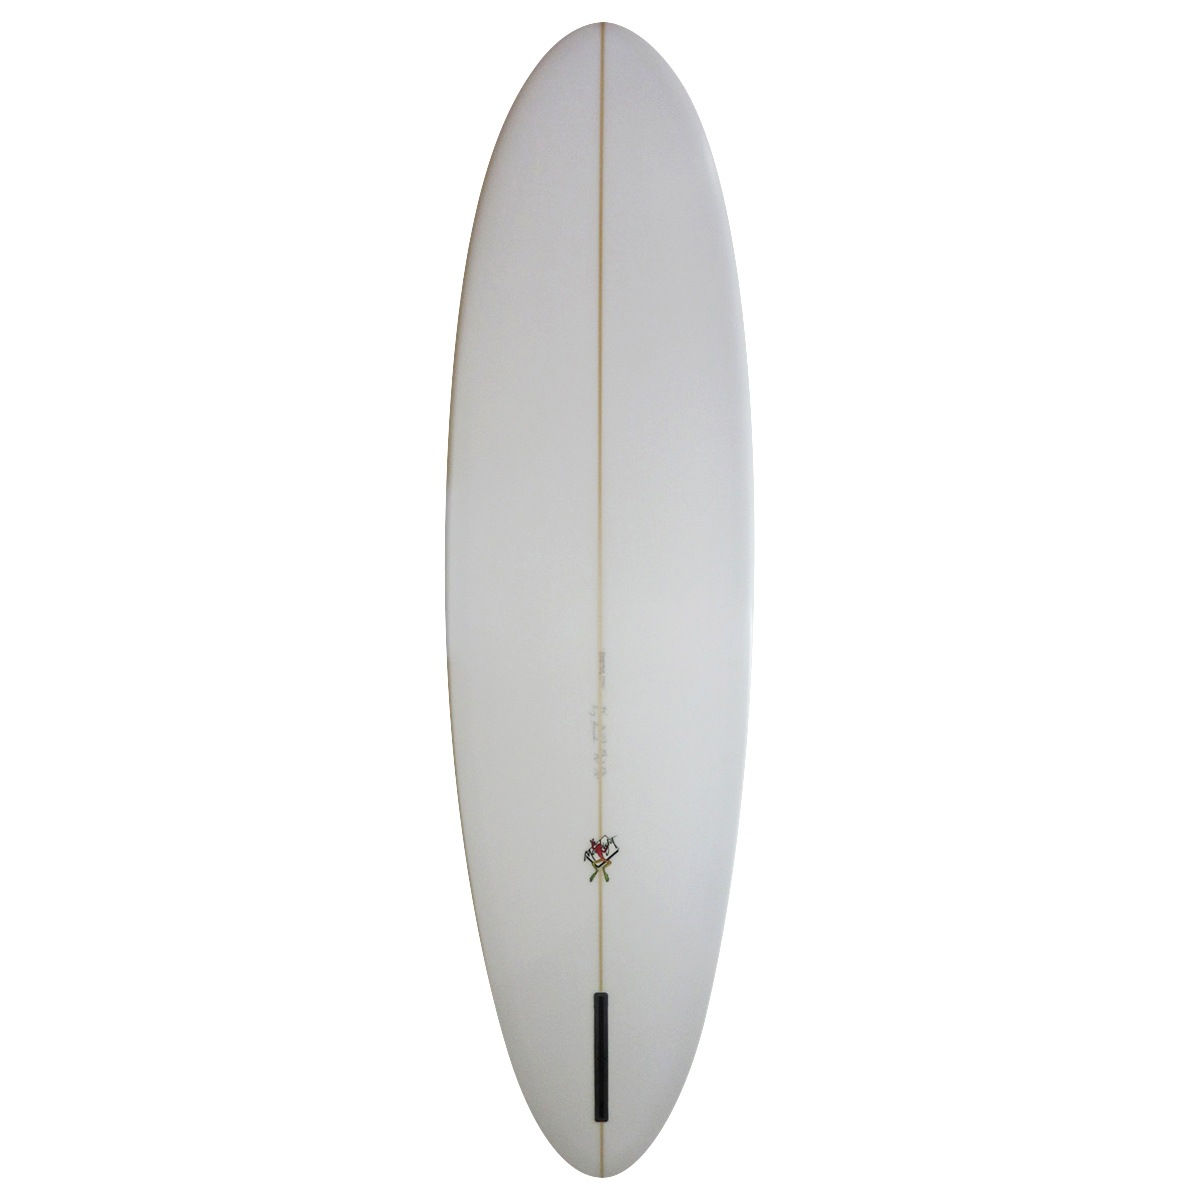 Gary Hanel Surfboards : Egg